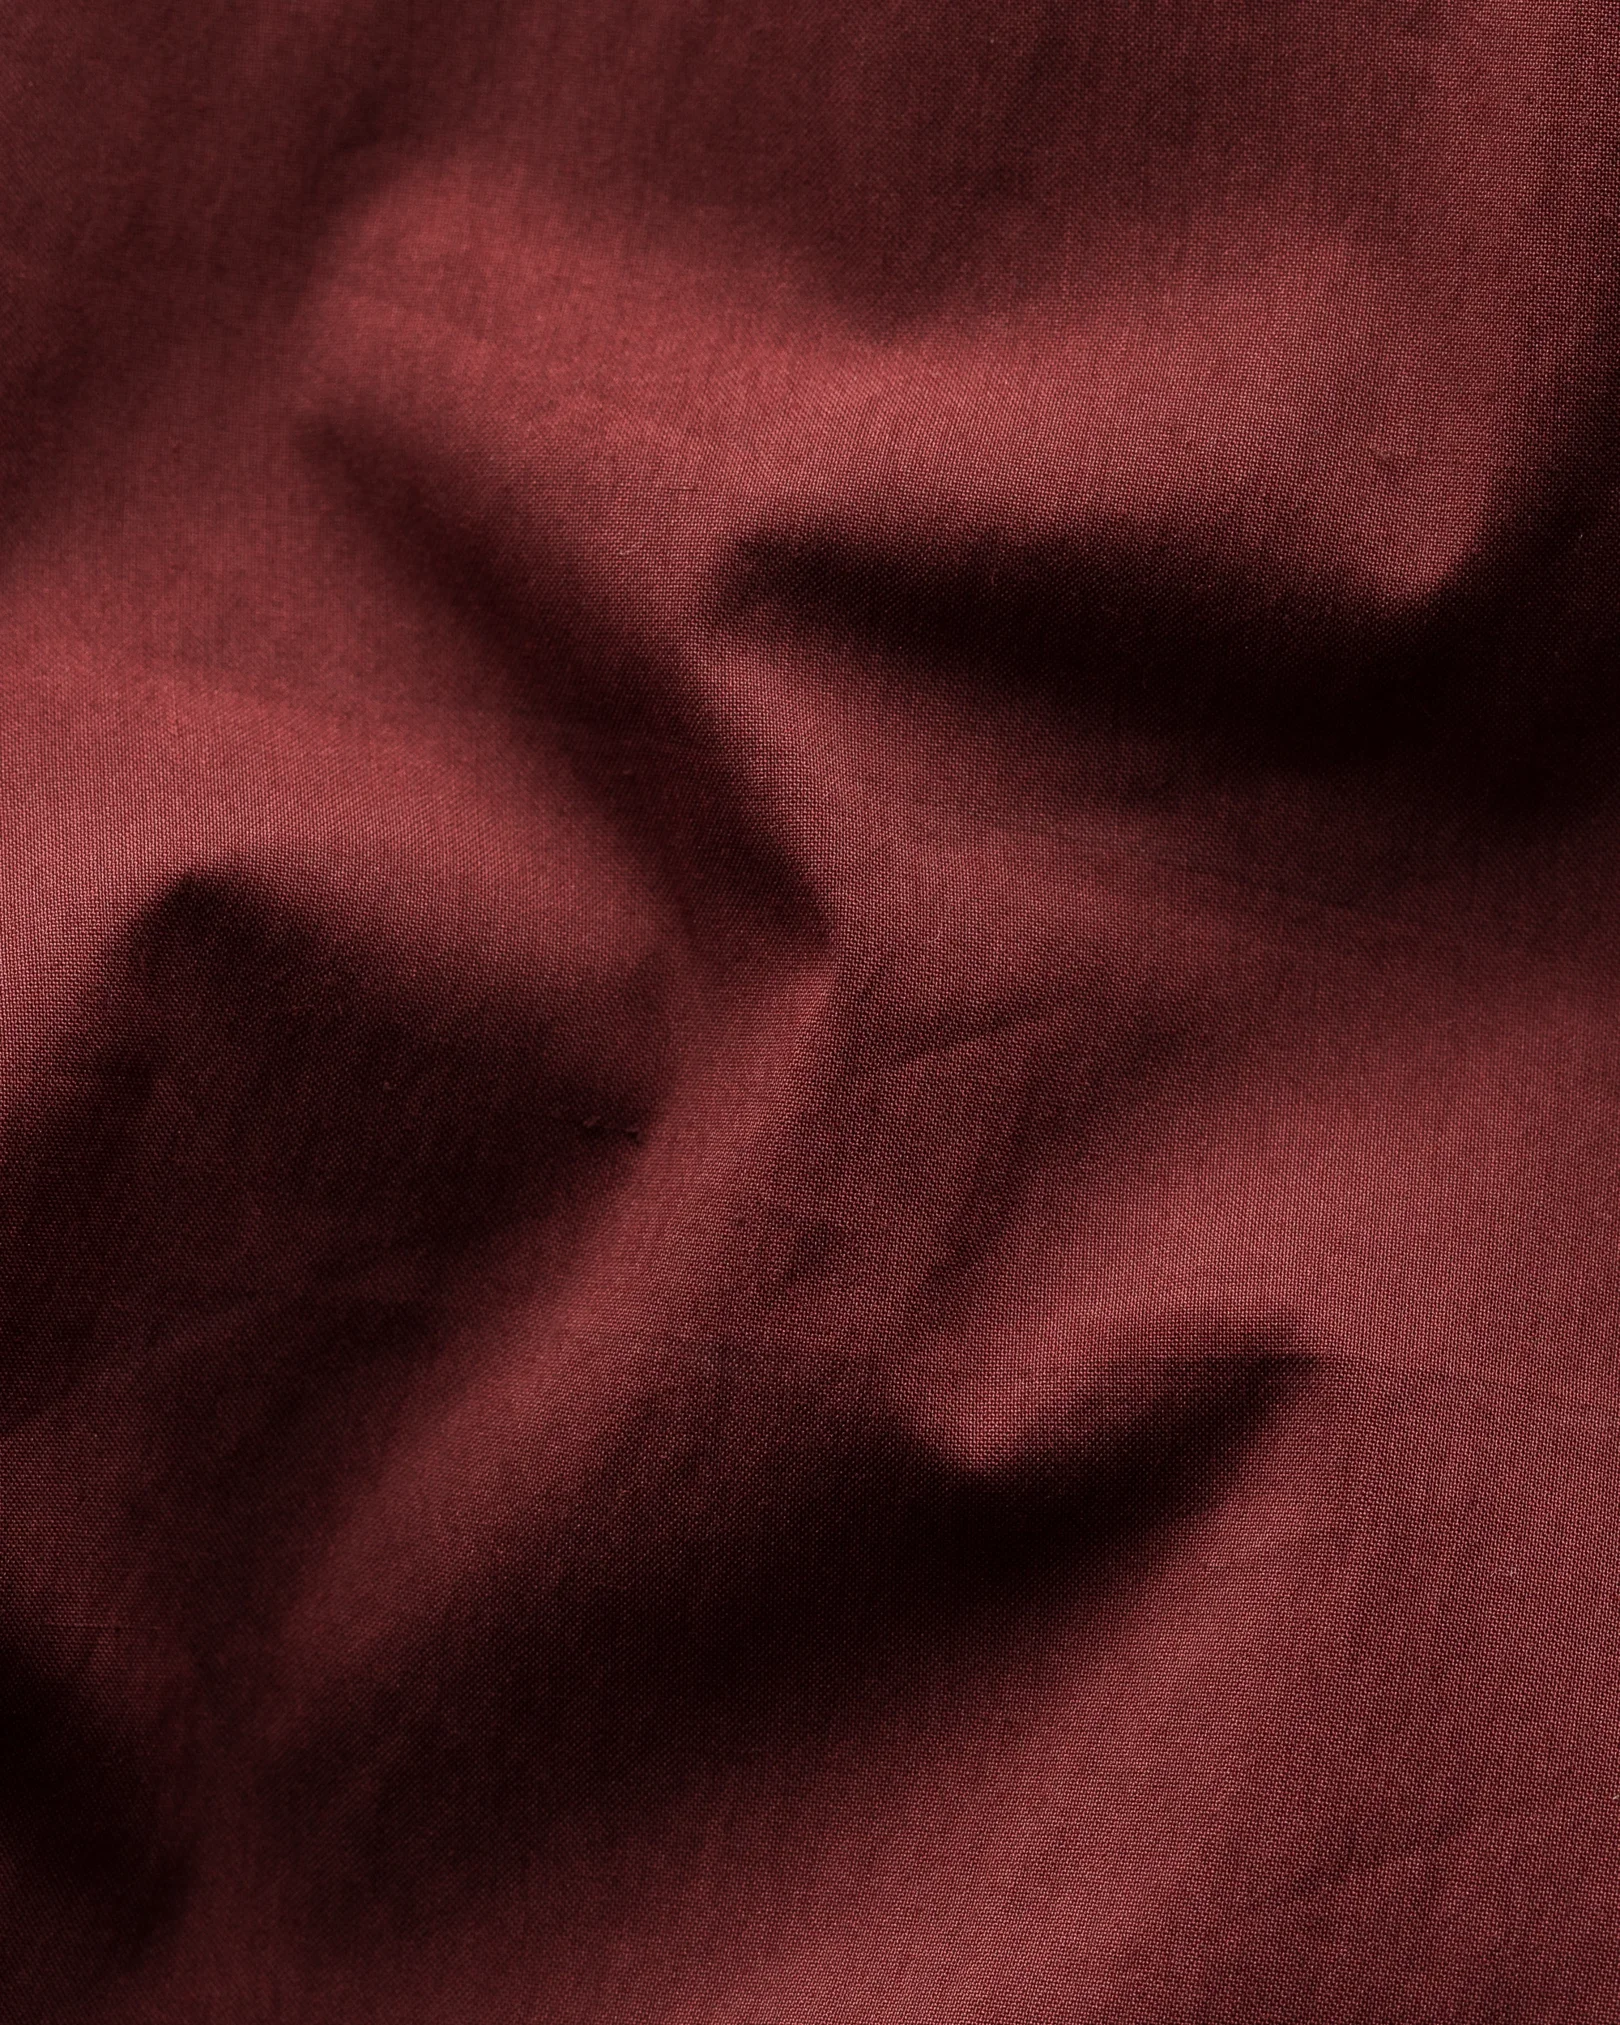 Eton - dark red wind vest